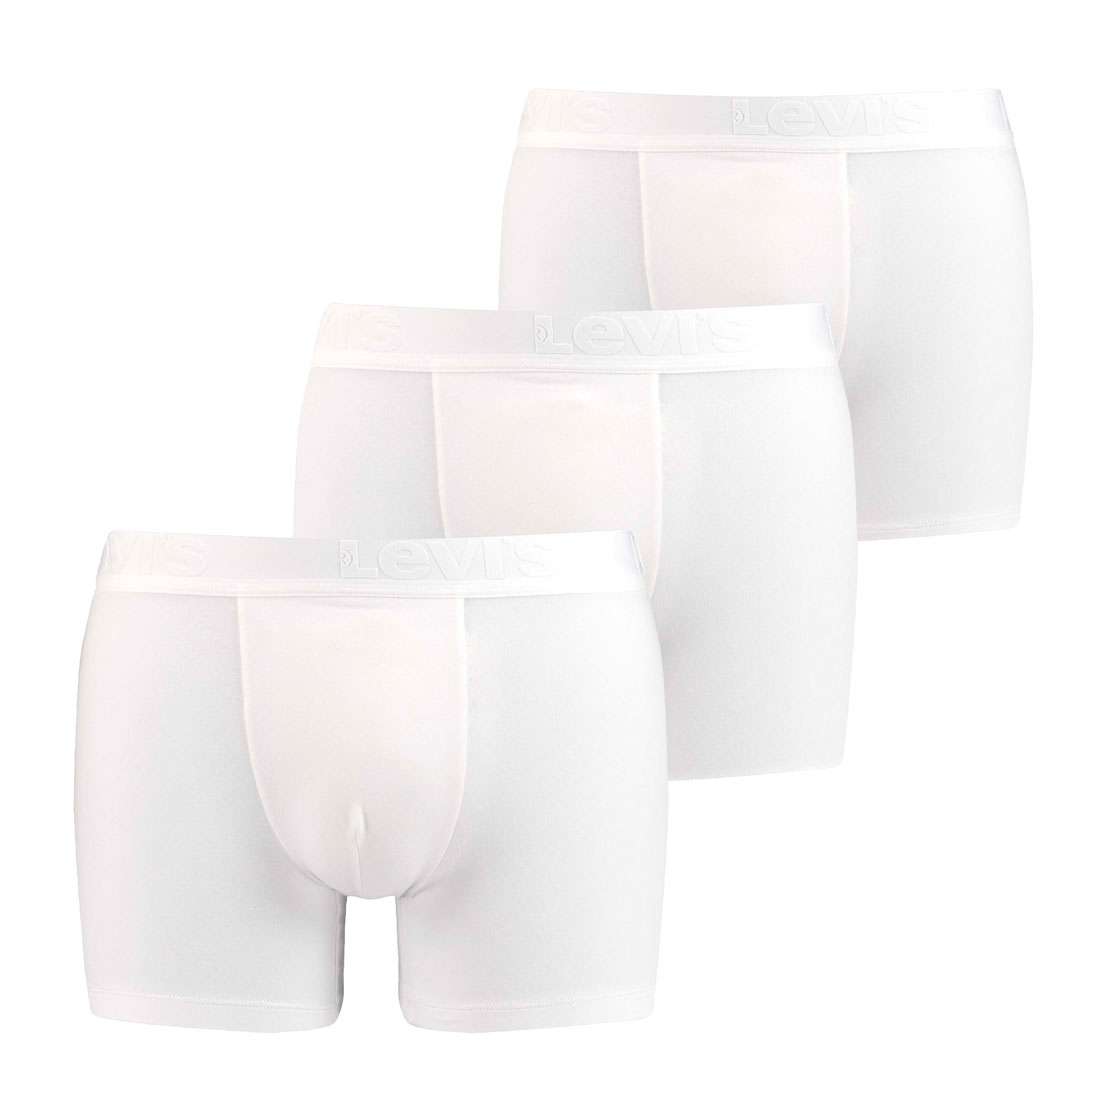 3er Pack Levis Men Premium Boxer Brief Boxershorts Herren Unterhose Pant Unterwäsche L, White von Levi's